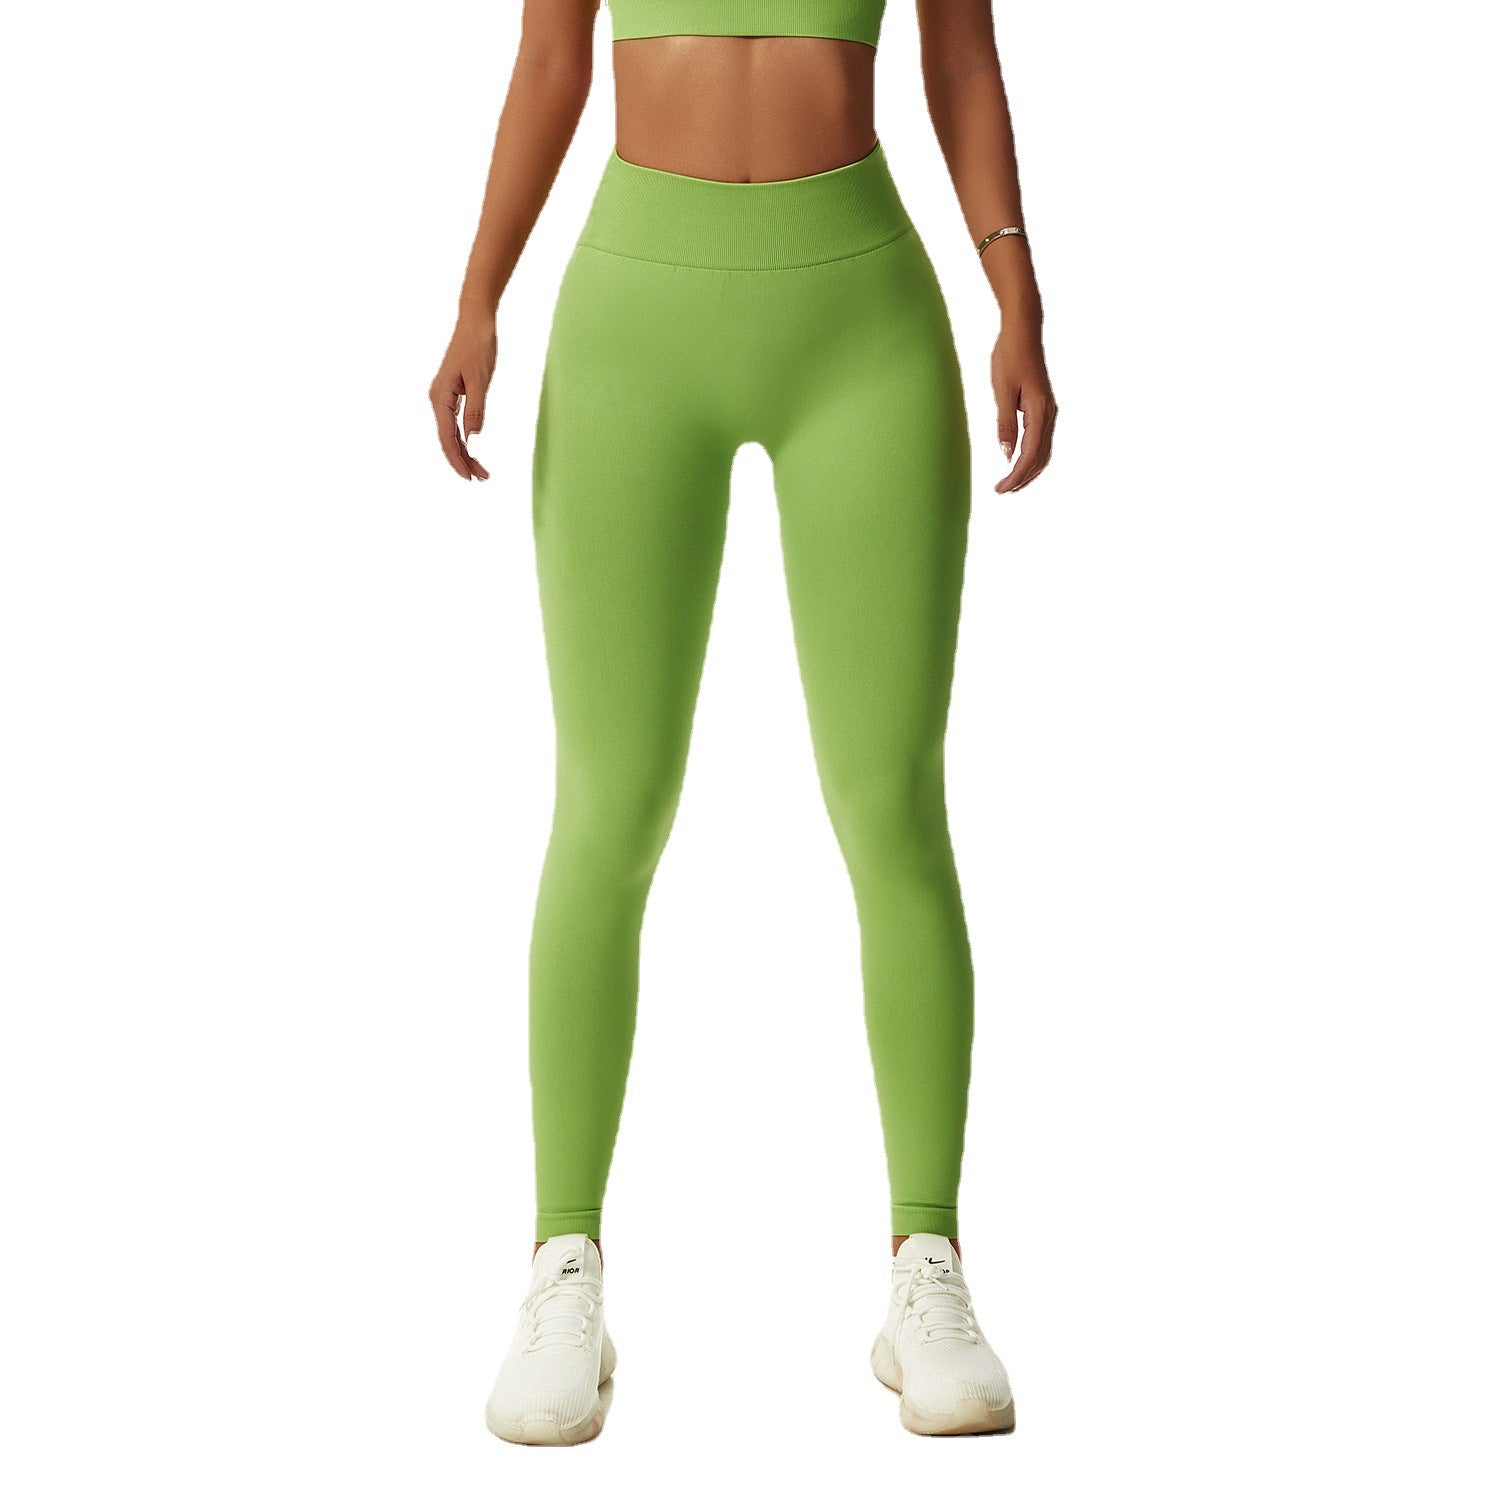 Seamless butt lift workout legging